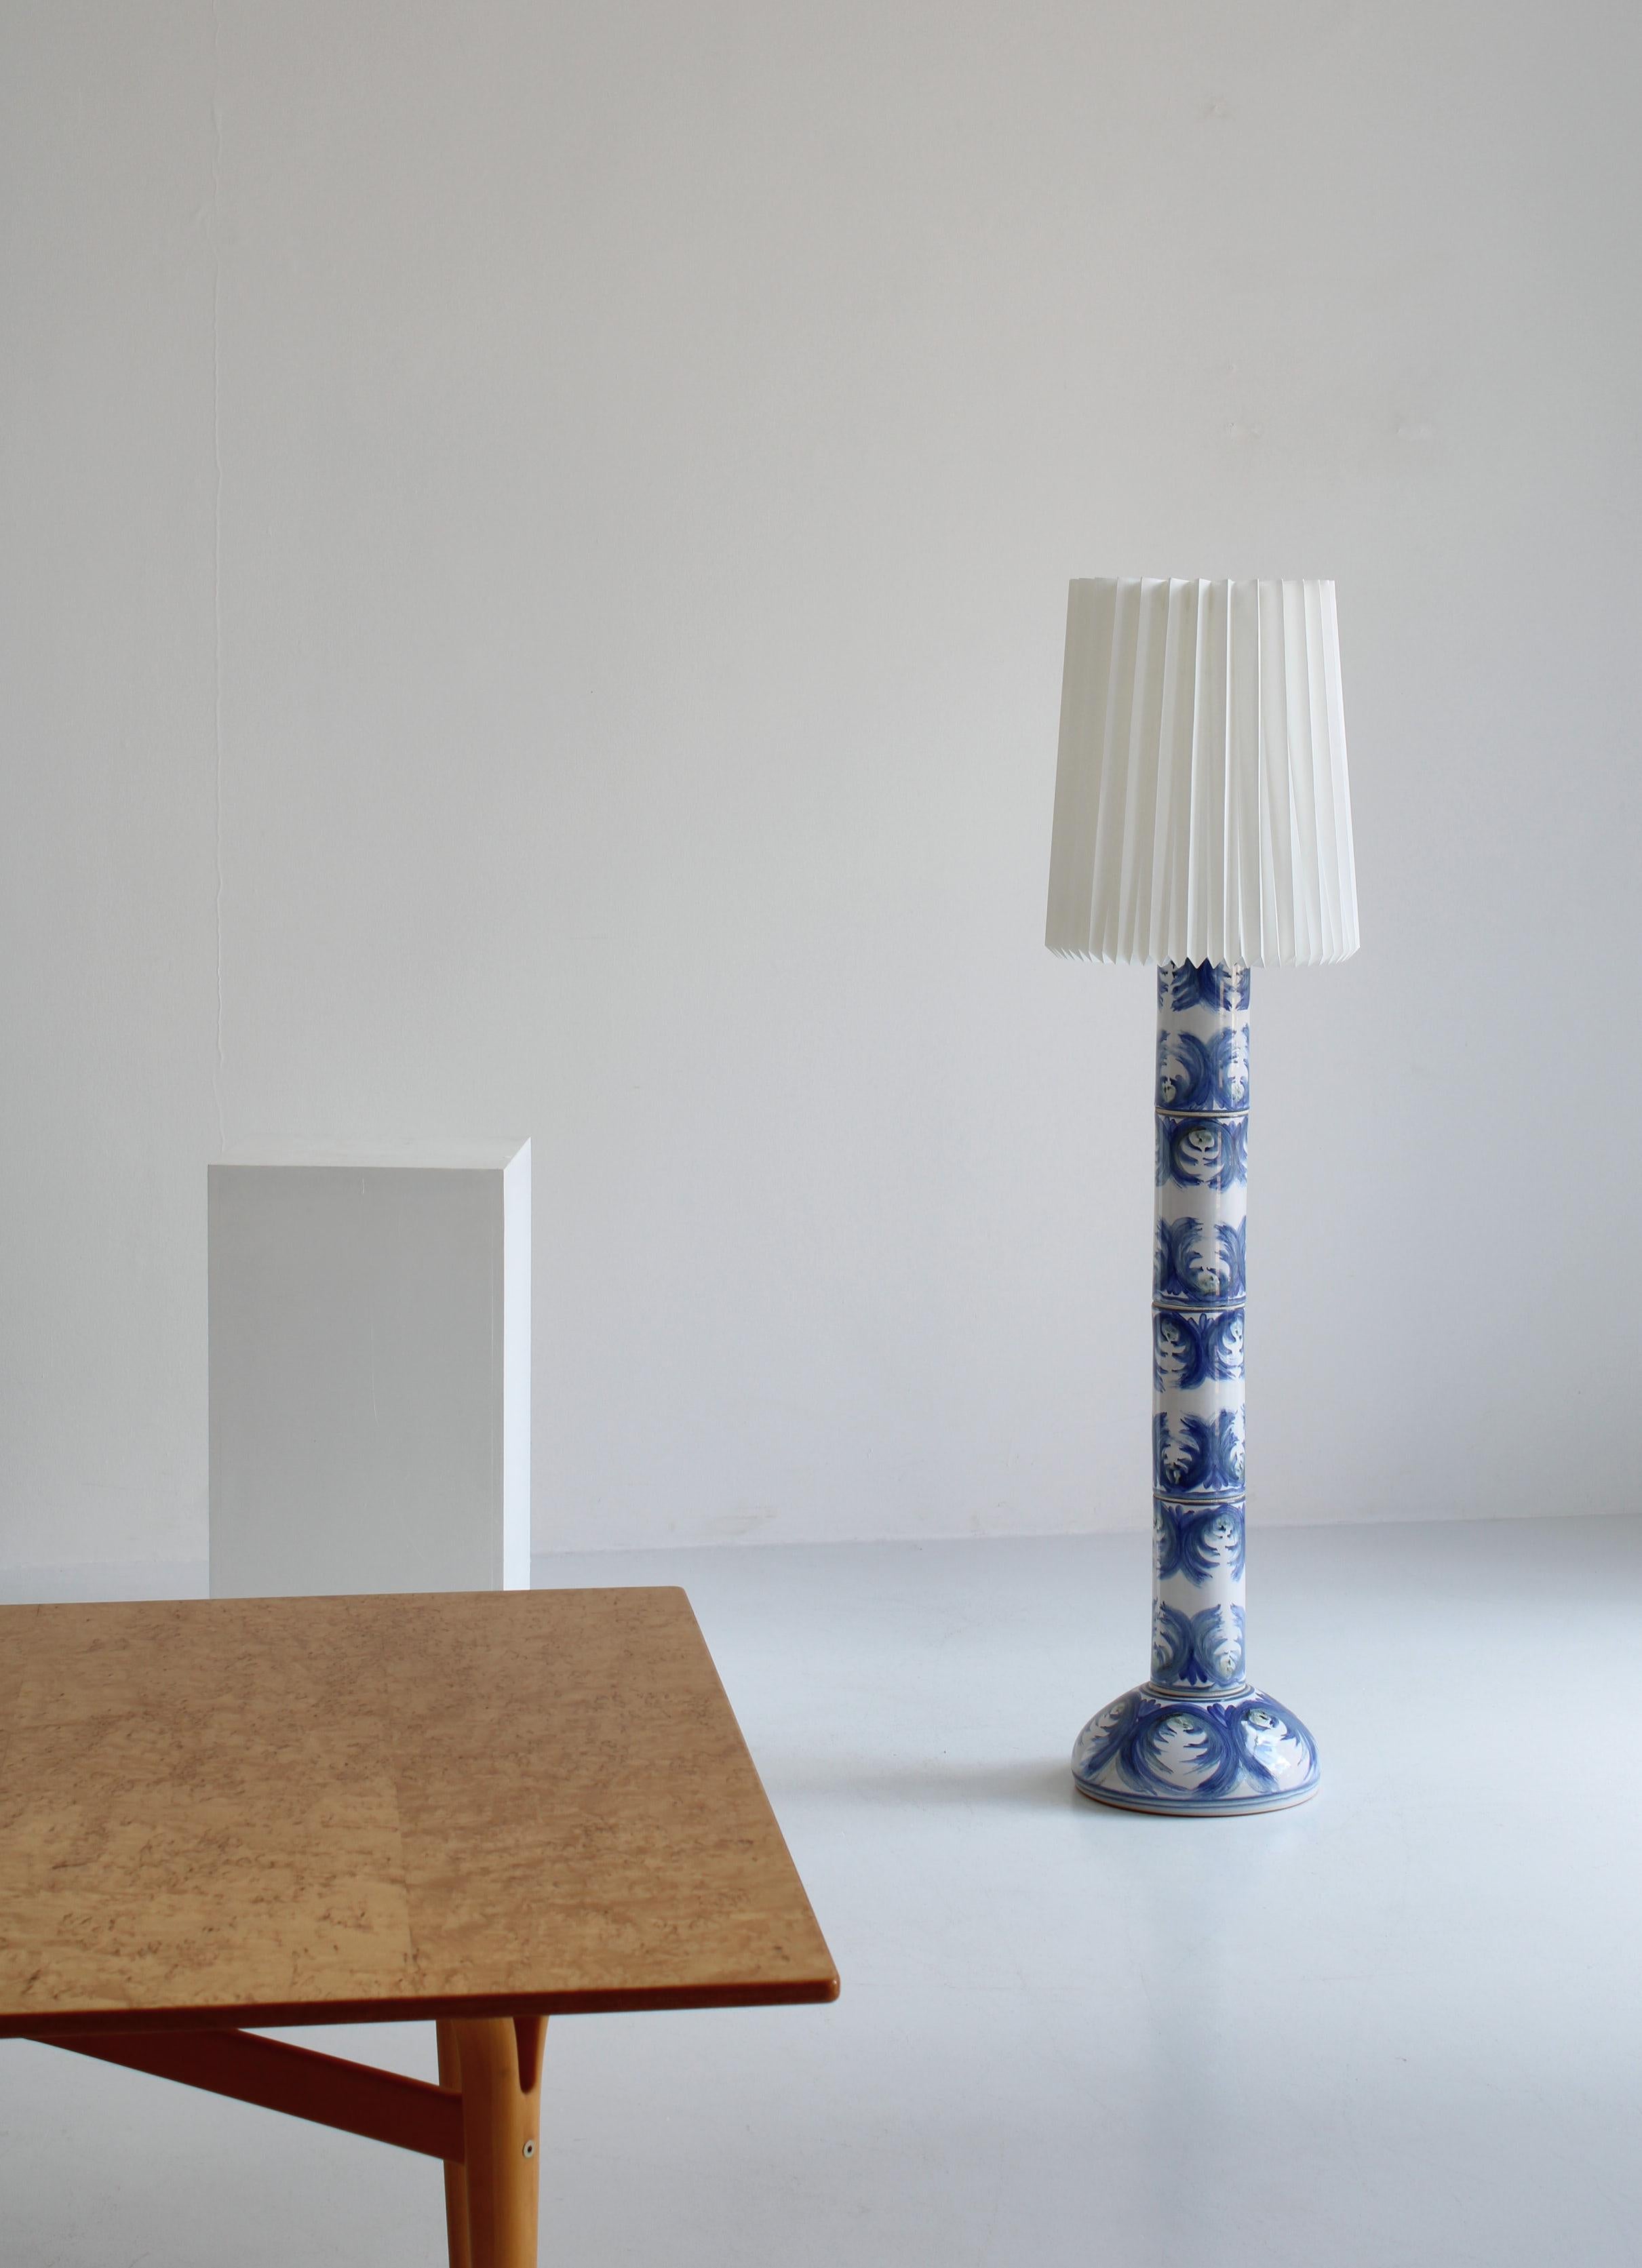 Grand et unique lampadaire fabriqué et décoré à la main par l'artiste céramiste danois Viggo Kyhn dans son propre atelier dans les années 1960. La base de la lampe est faite de faïence qui a été décorée à la main par des touches bleutées et